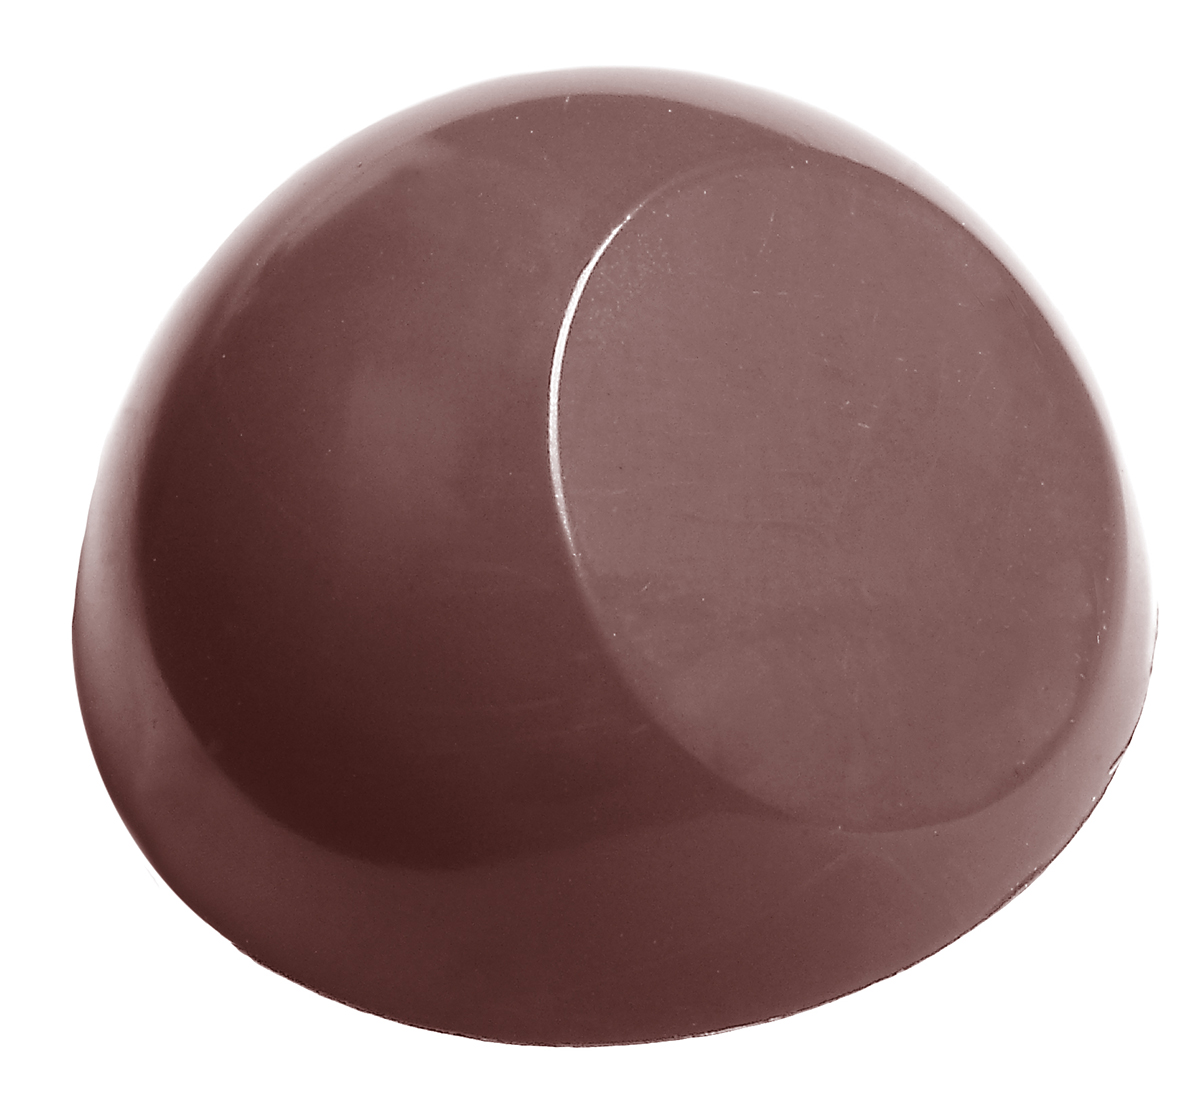 Se Professionel chokoladeform i polycarbonat - Half sphere with flat side Ø2,75 cm CW1561 hos BageTid.dk